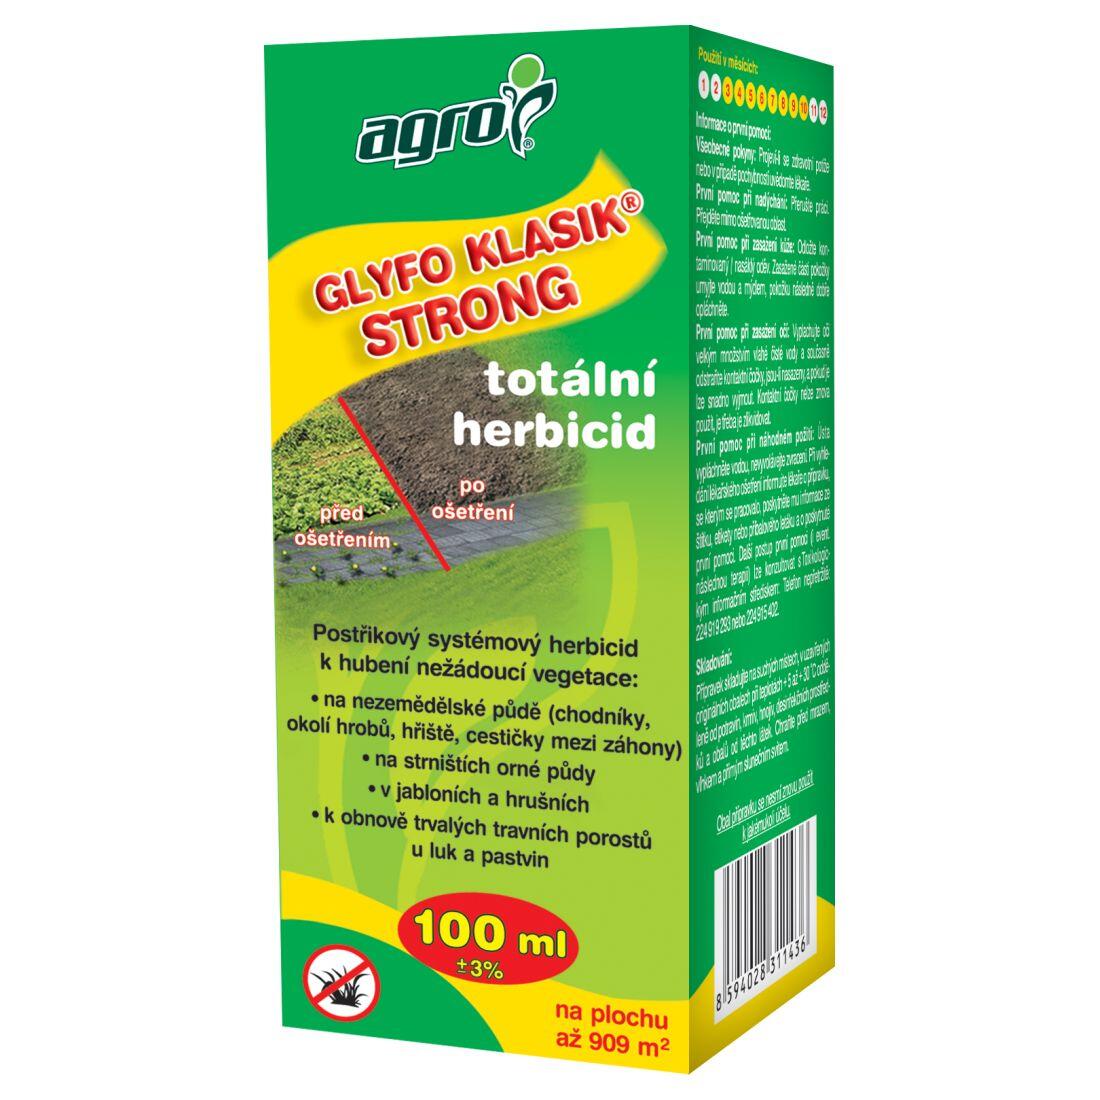 AGRO GLYFO Klasik Strong total.herbicid  100ml 0.12 Kg MAXMIX Sklad14 912623 23